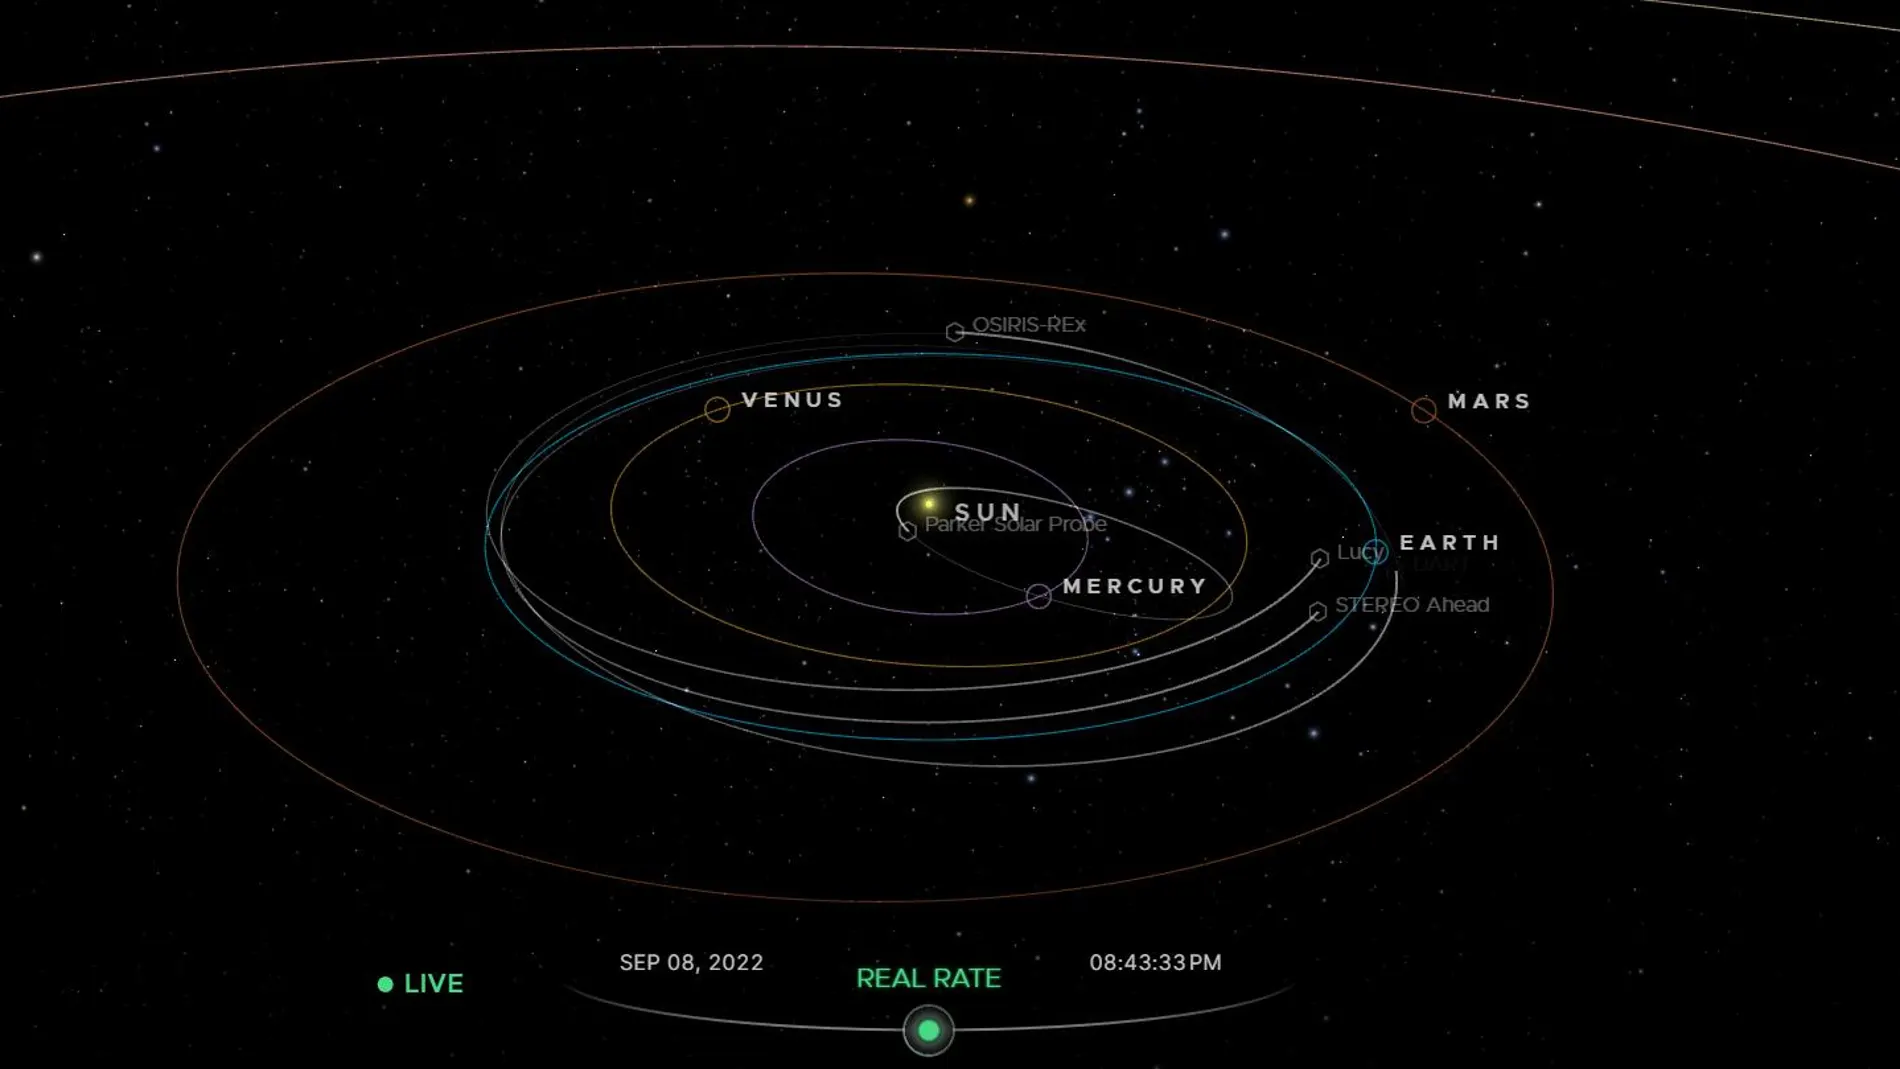 Vista general del sistema solar que muestra Eyes on Solar System cuando el usuario accede.